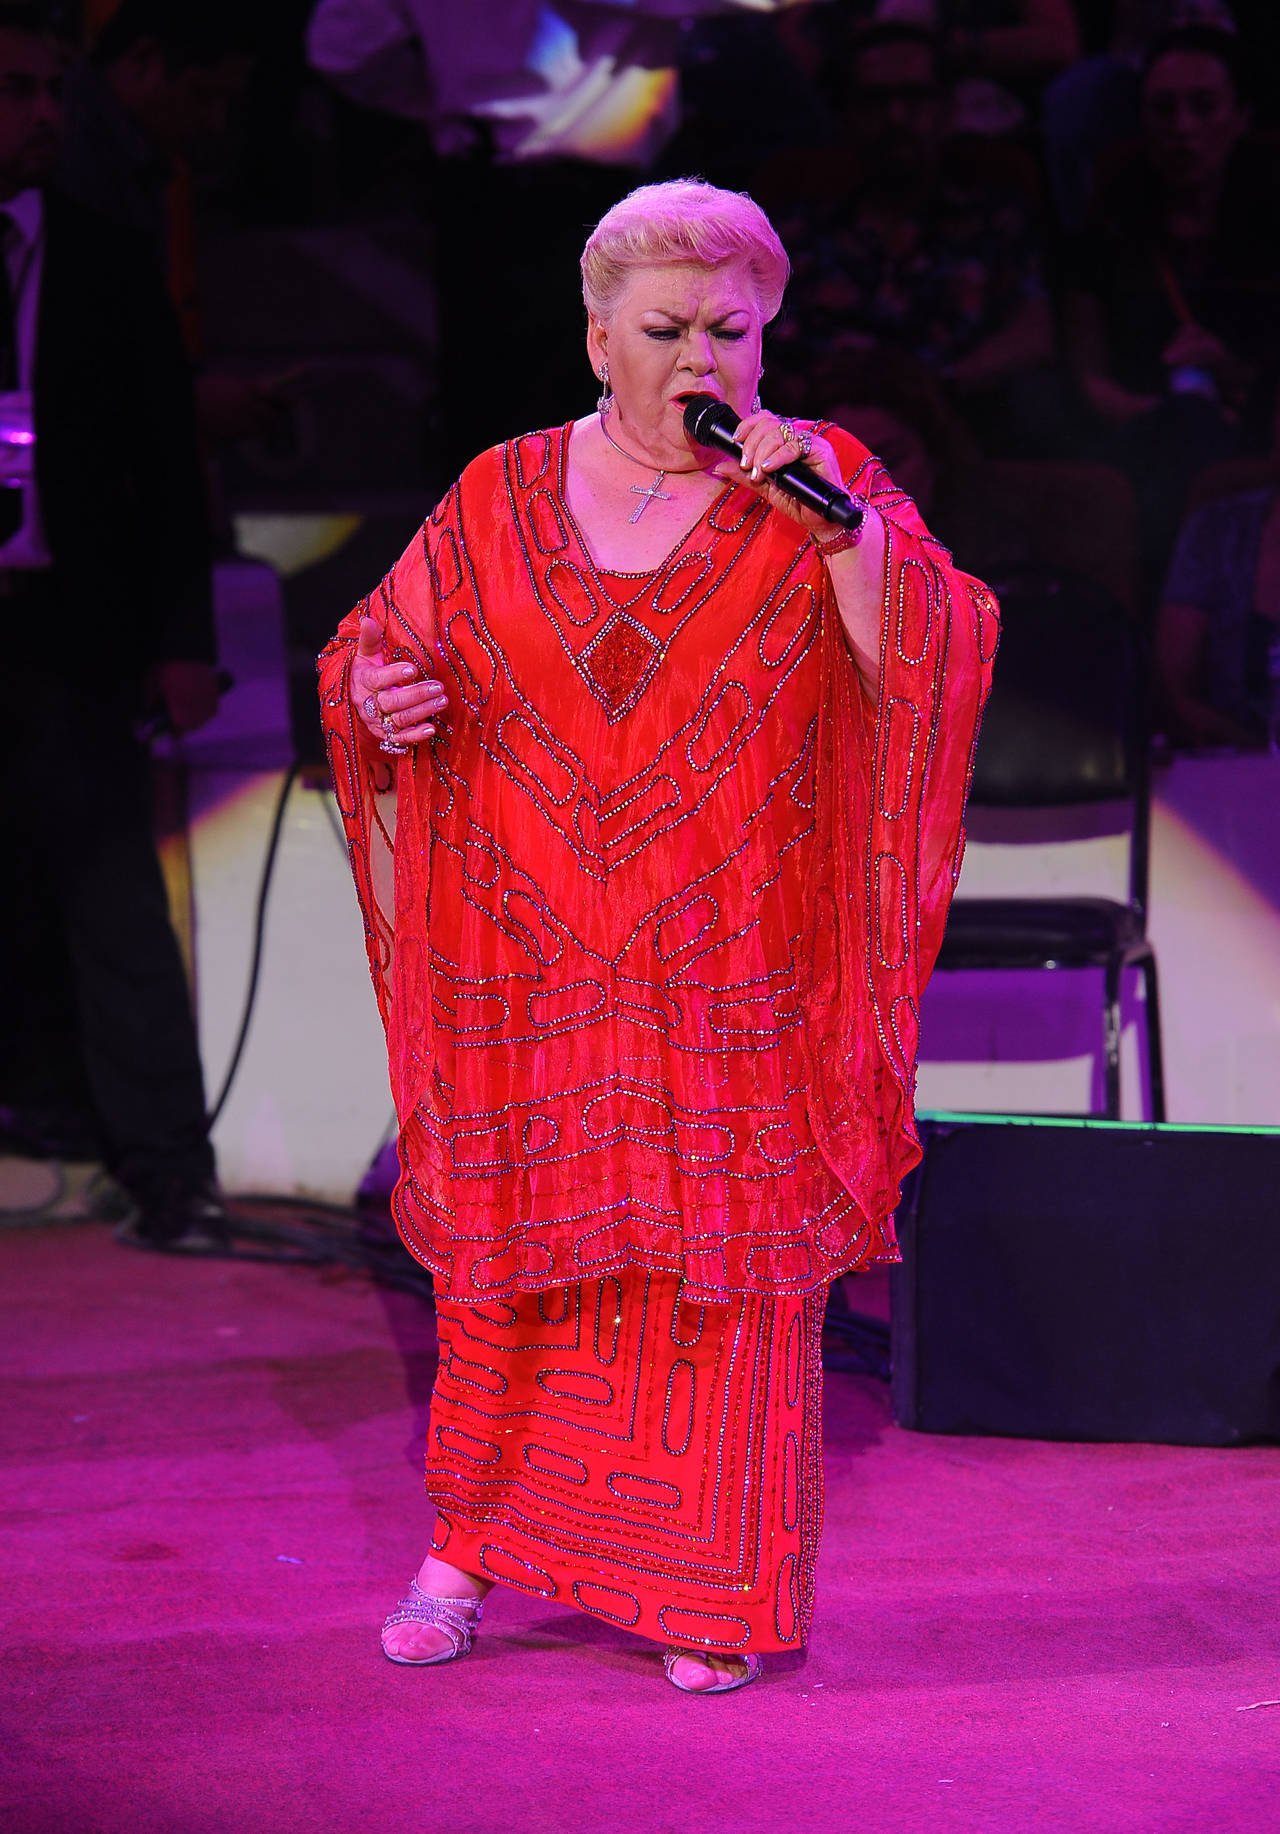 Favorita. La cantante verecruzana demostró que aun se encuentra entre las favoritas del público.